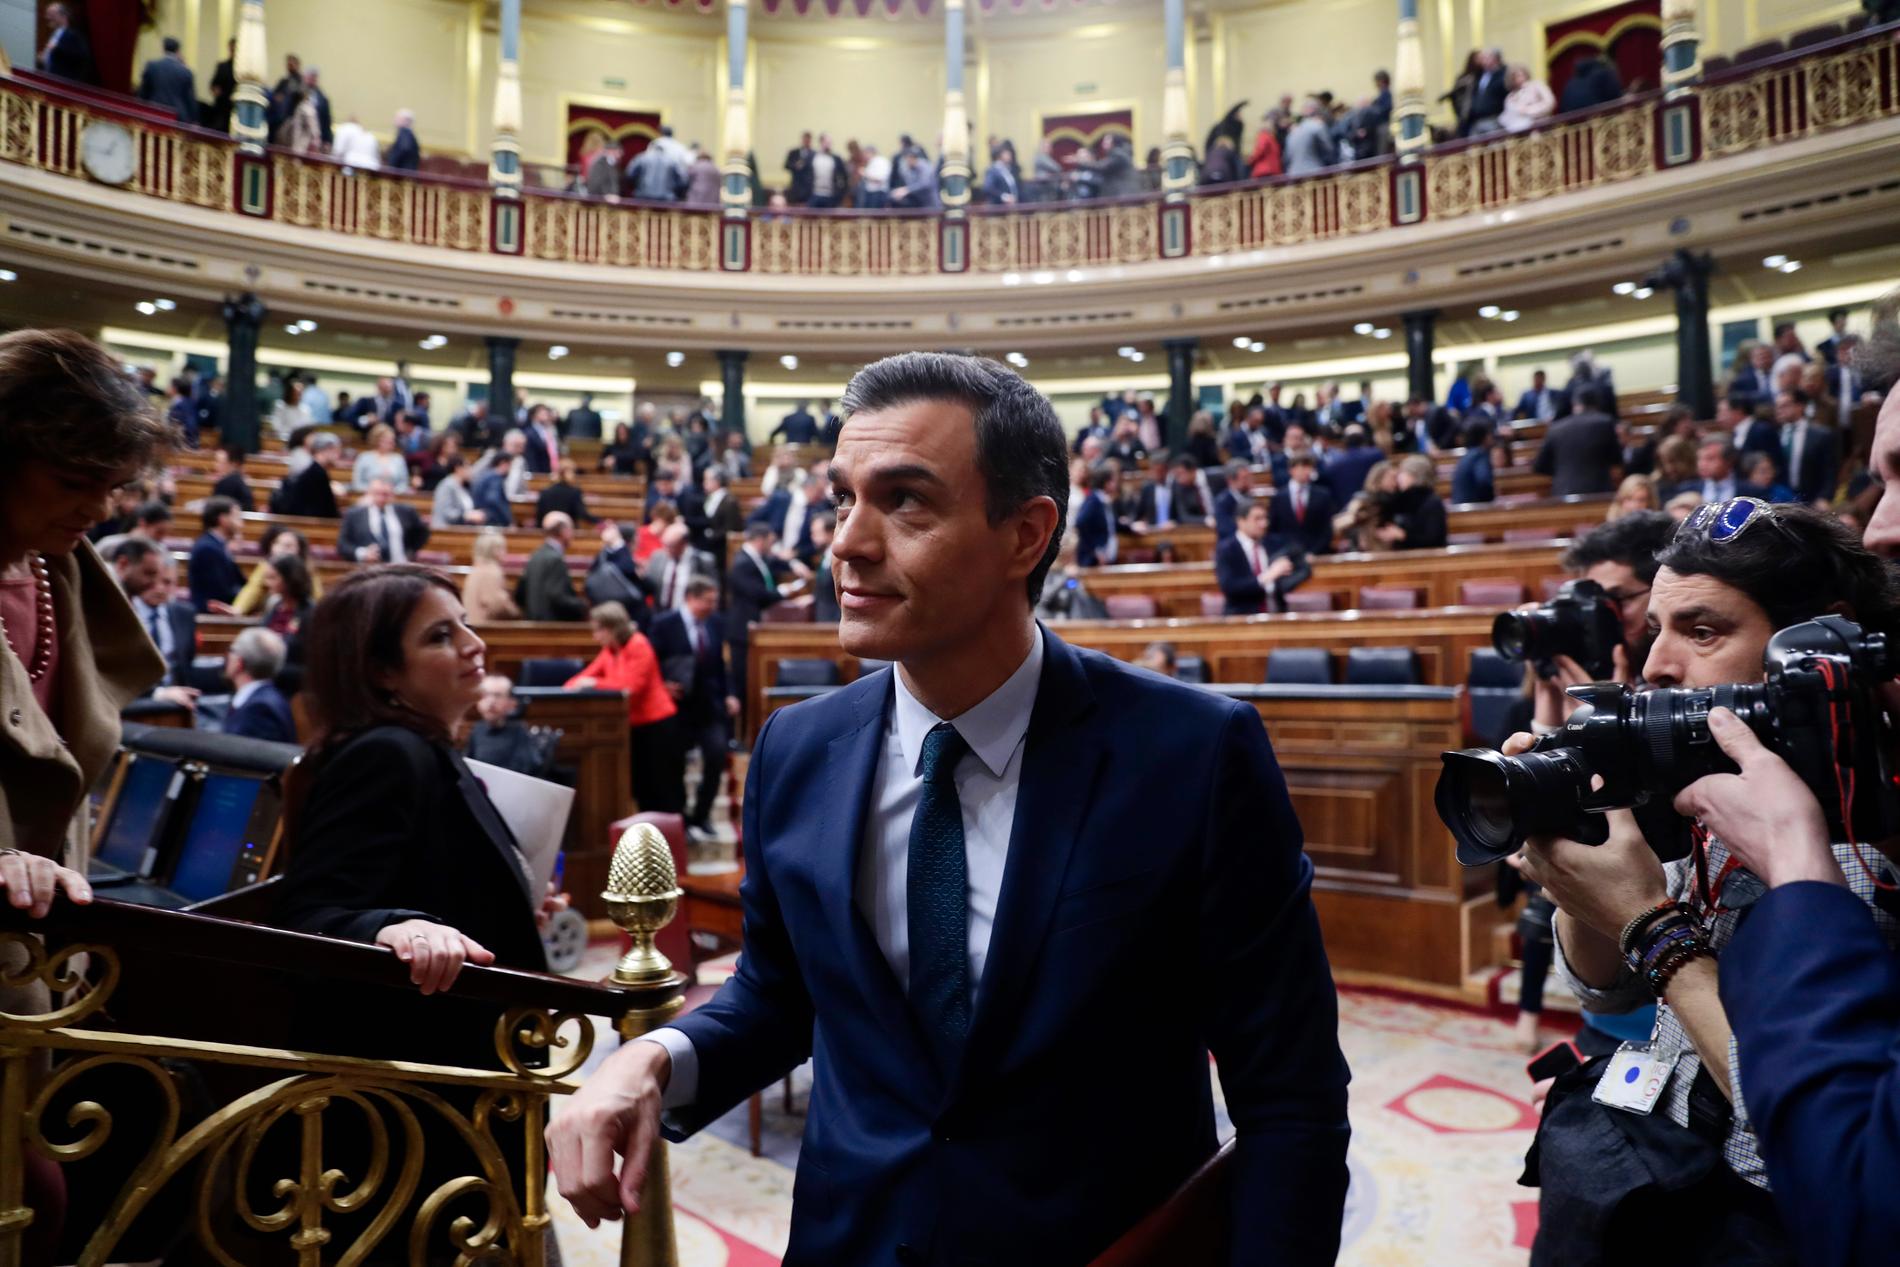 Den spanske tillförordnade premiärministern Pedro Sánchez lämnar kongressen efter den första voteringen. I dag, efter den andra voteringen, antas han bli ny regeringsbildare.